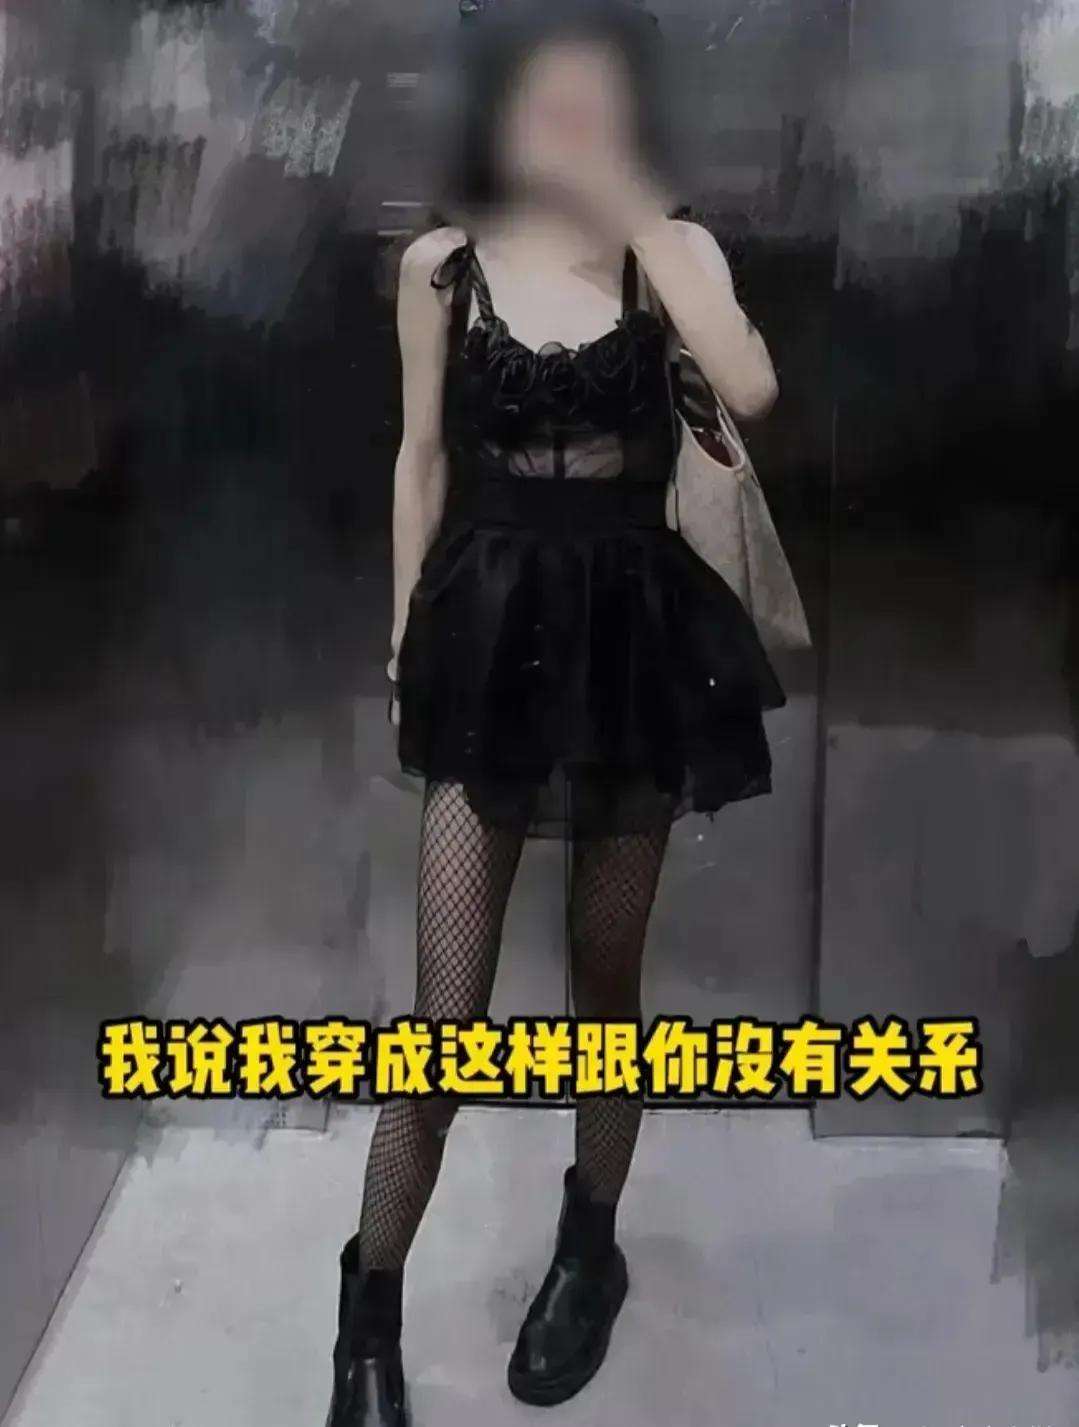 福建一男子公交上公然猥亵女子 被害人怒斥挣扎均无果 - 我们视频 - 新京报网